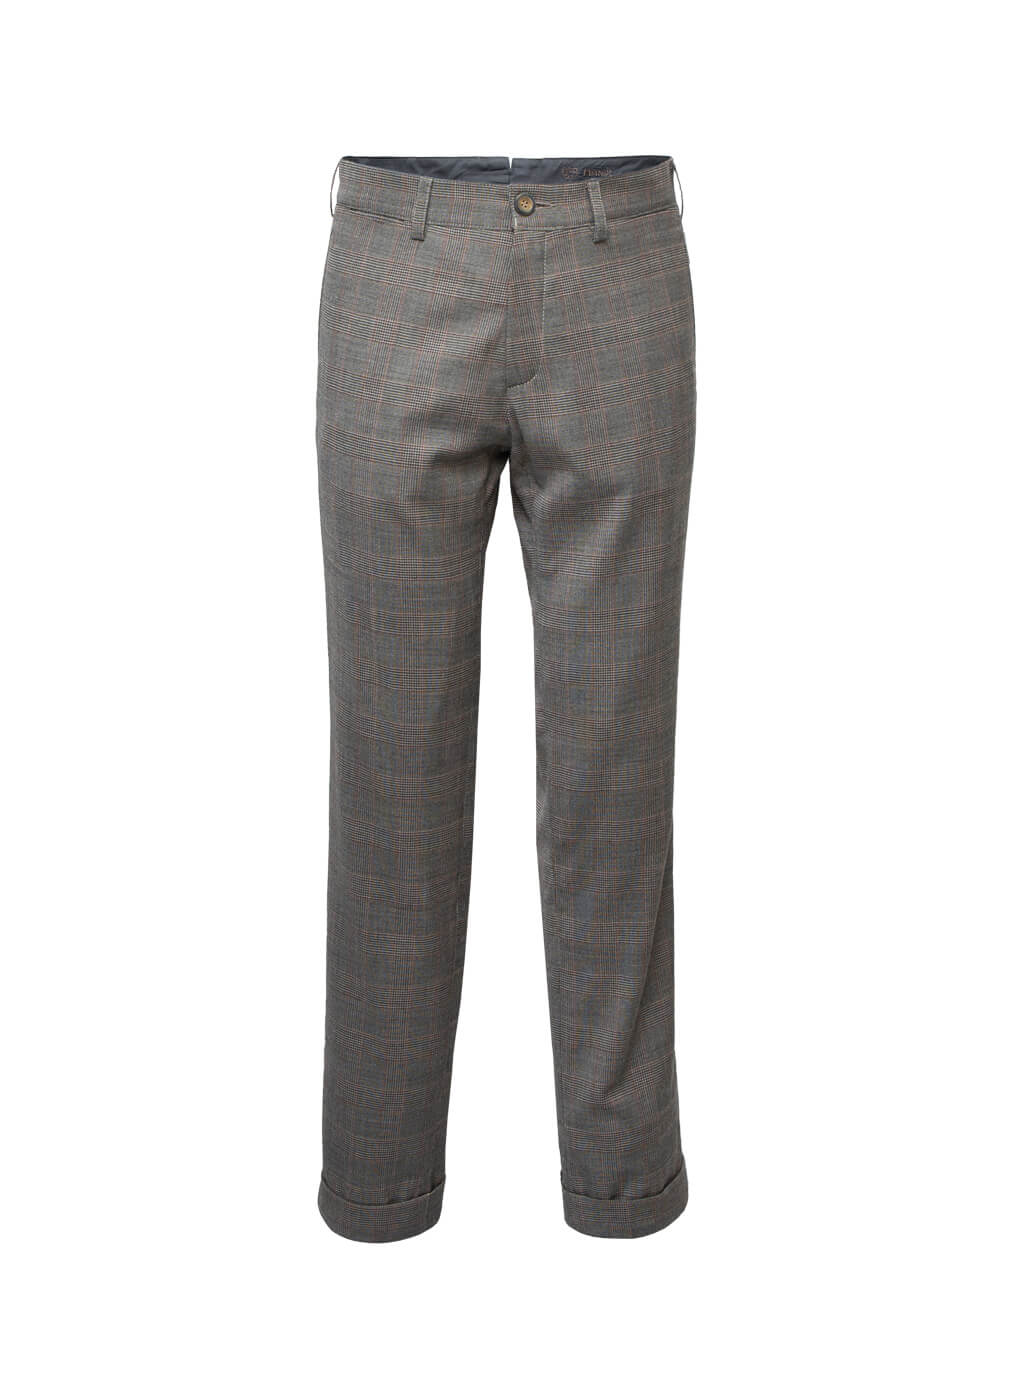 Fabric Trousers Men “Cooper”, brown bordeaux